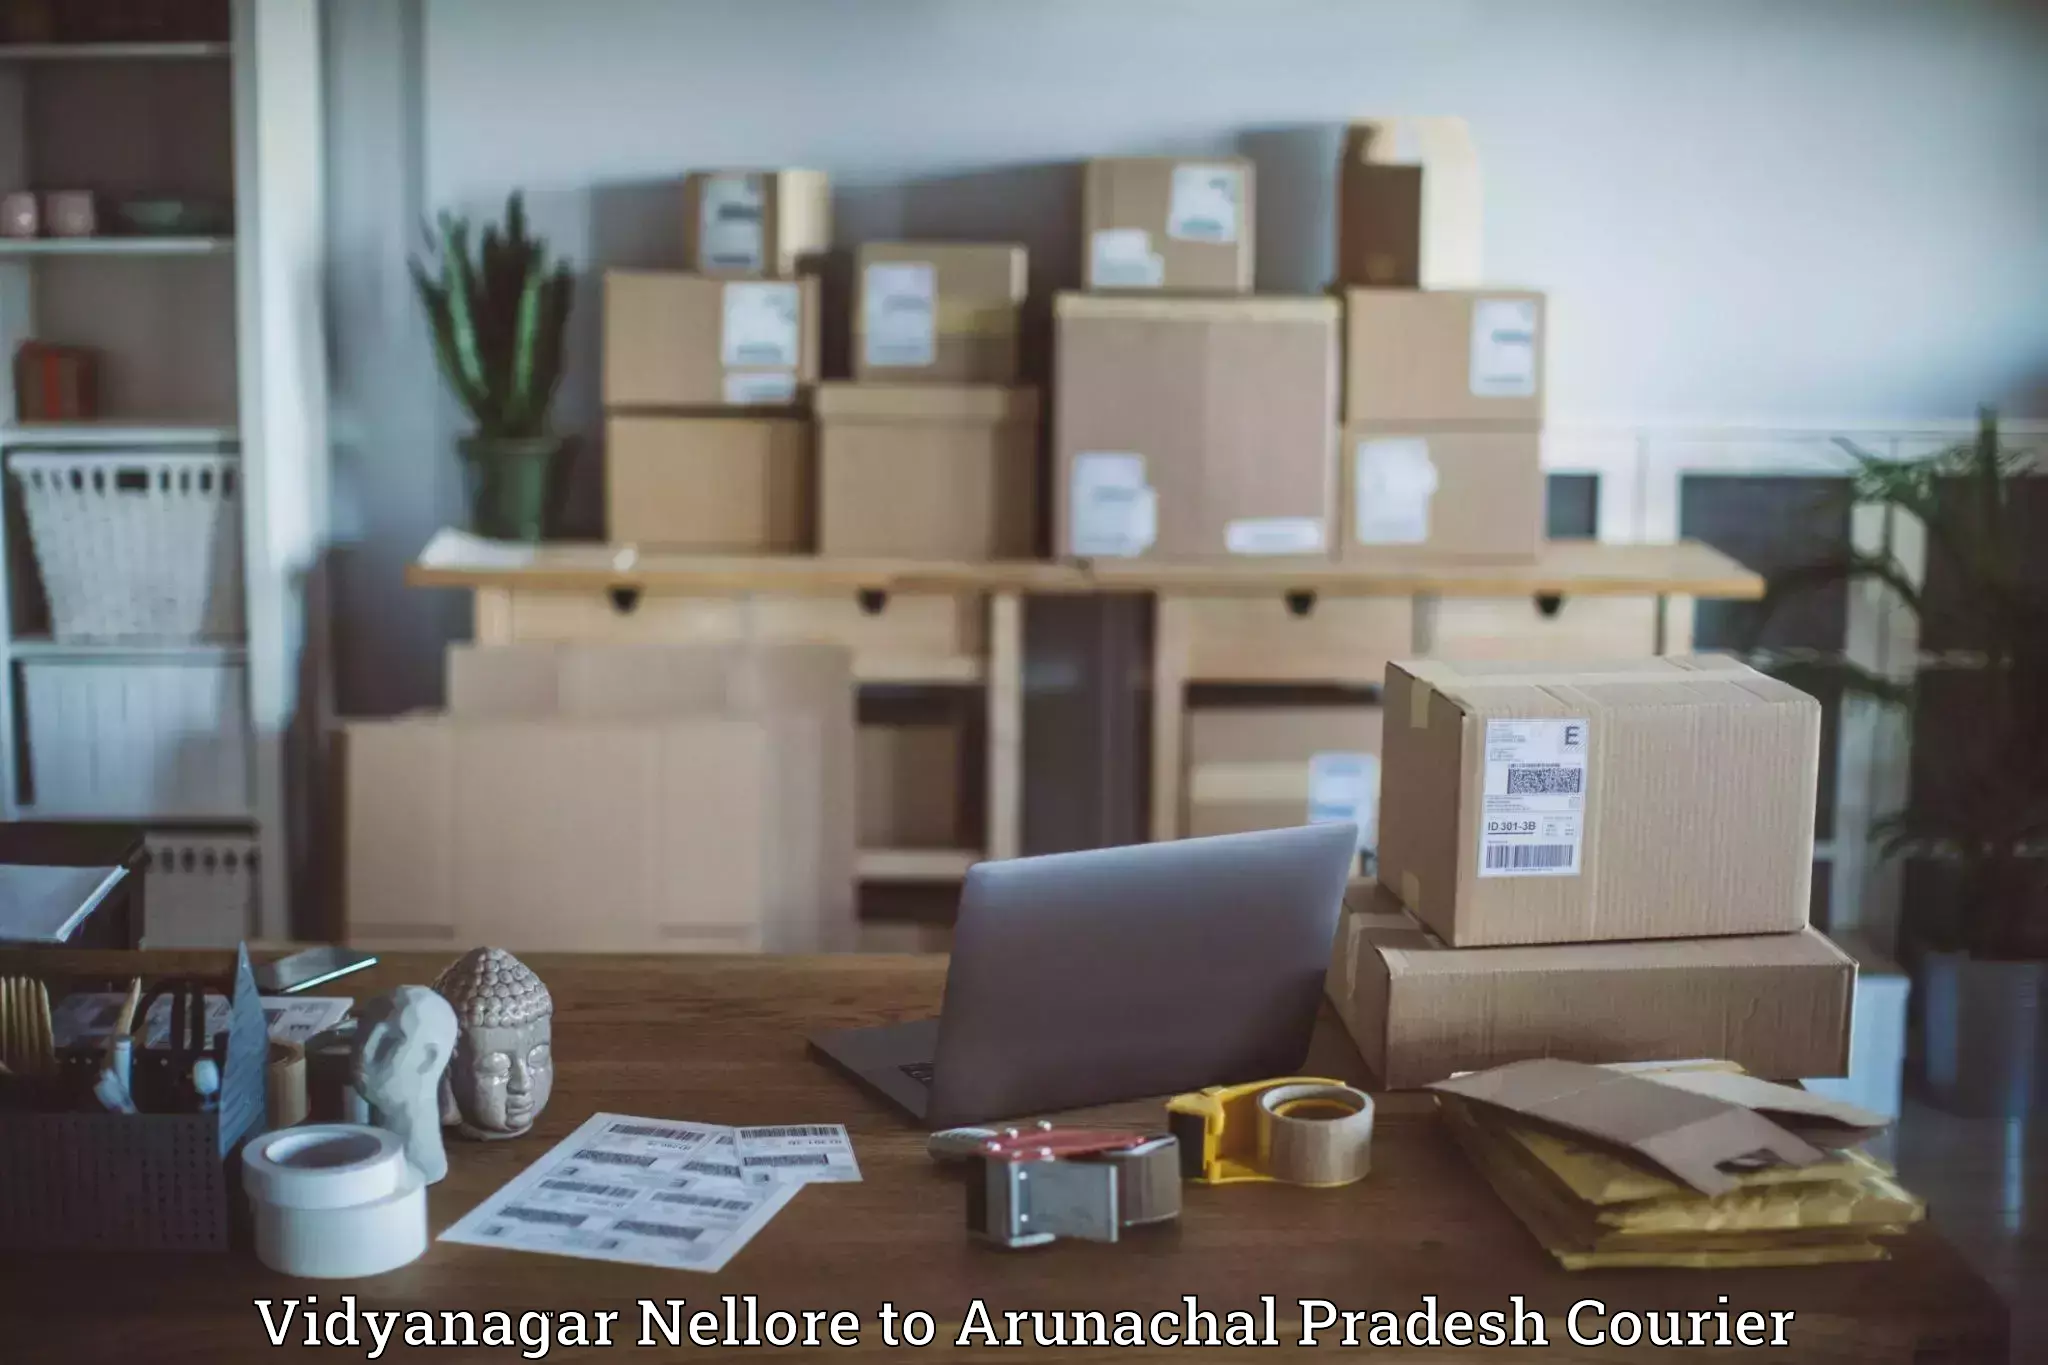 Business courier solutions in Vidyanagar Nellore to Arunachal Pradesh